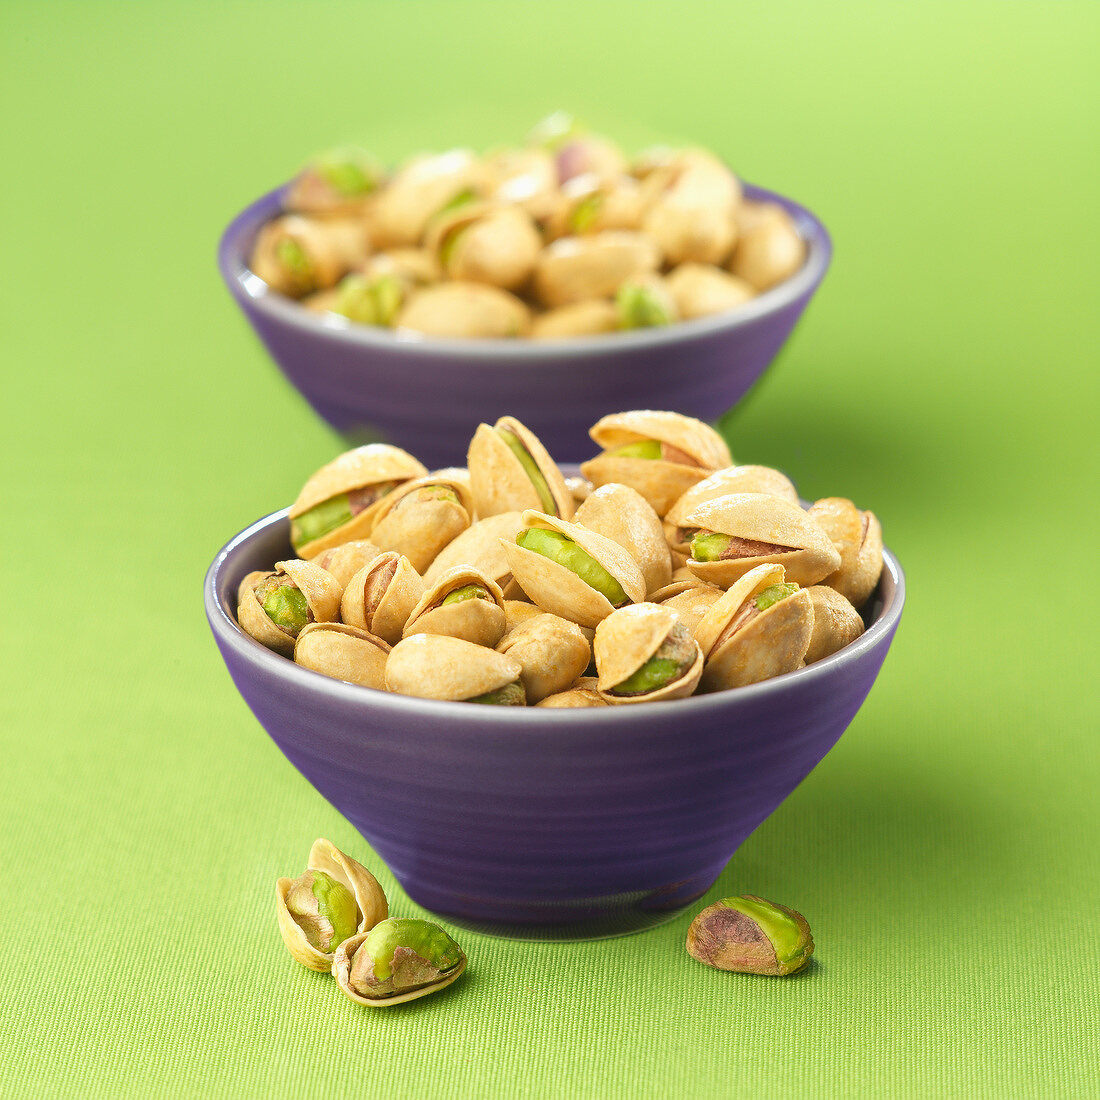 Bowls of pistachios